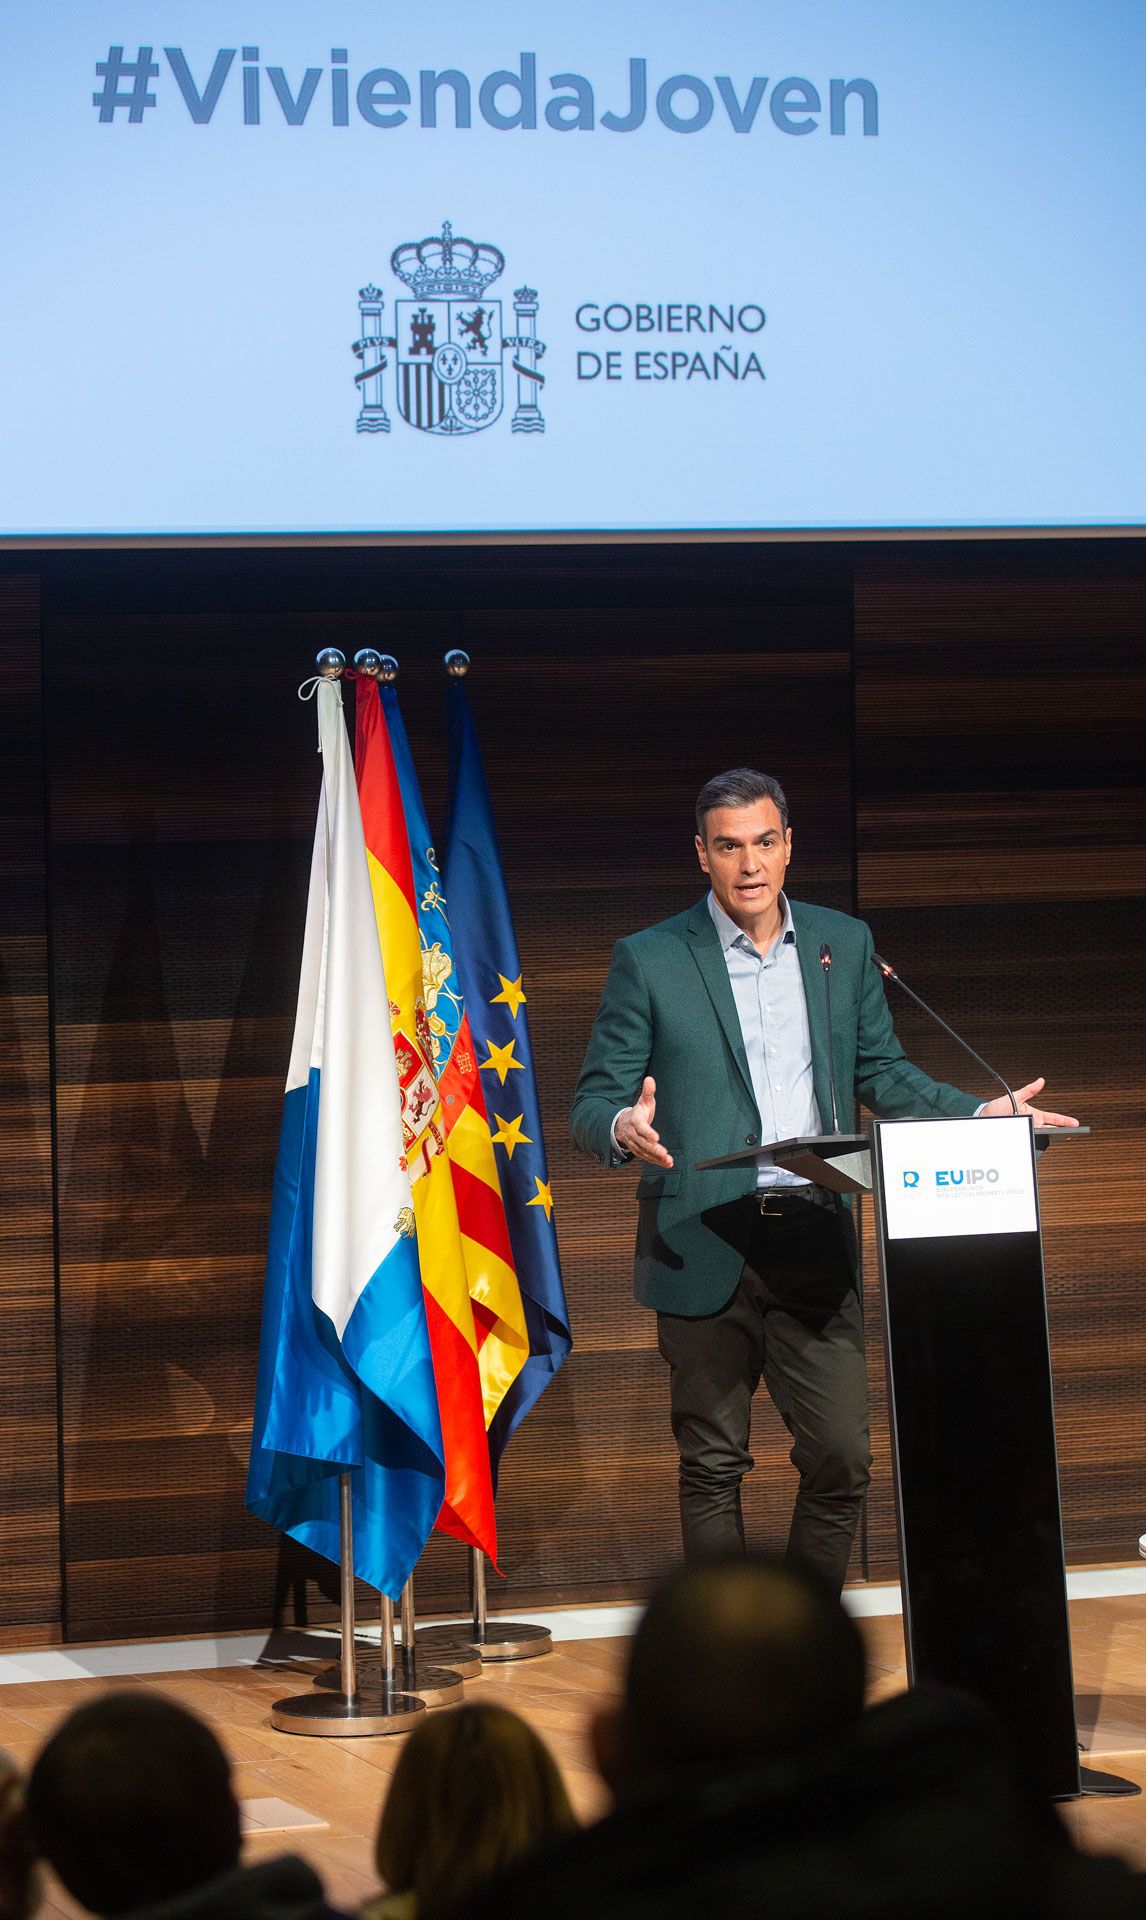 Pedro Sánchez presenta en Alicante el plan de apoyo a los jóvenes para el acceso a la vivienda